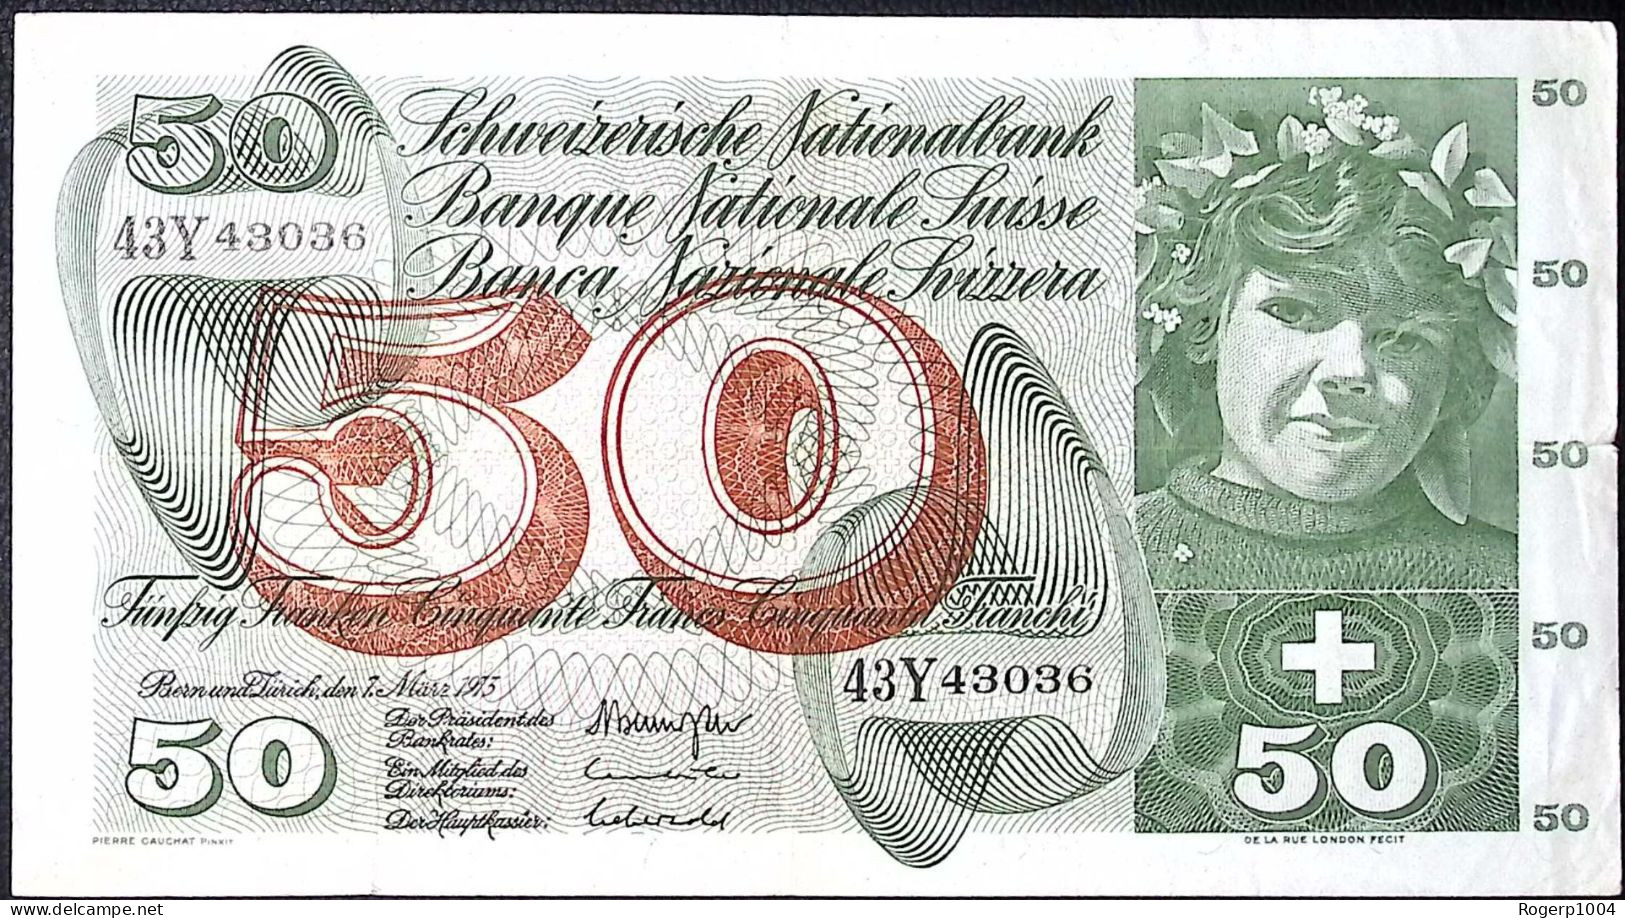 SUISSE/SWITZERLAND * 50 Francs * Cueillette Des Pommes * 07/03/73 * Etat/Grade TTB/VF - Suiza